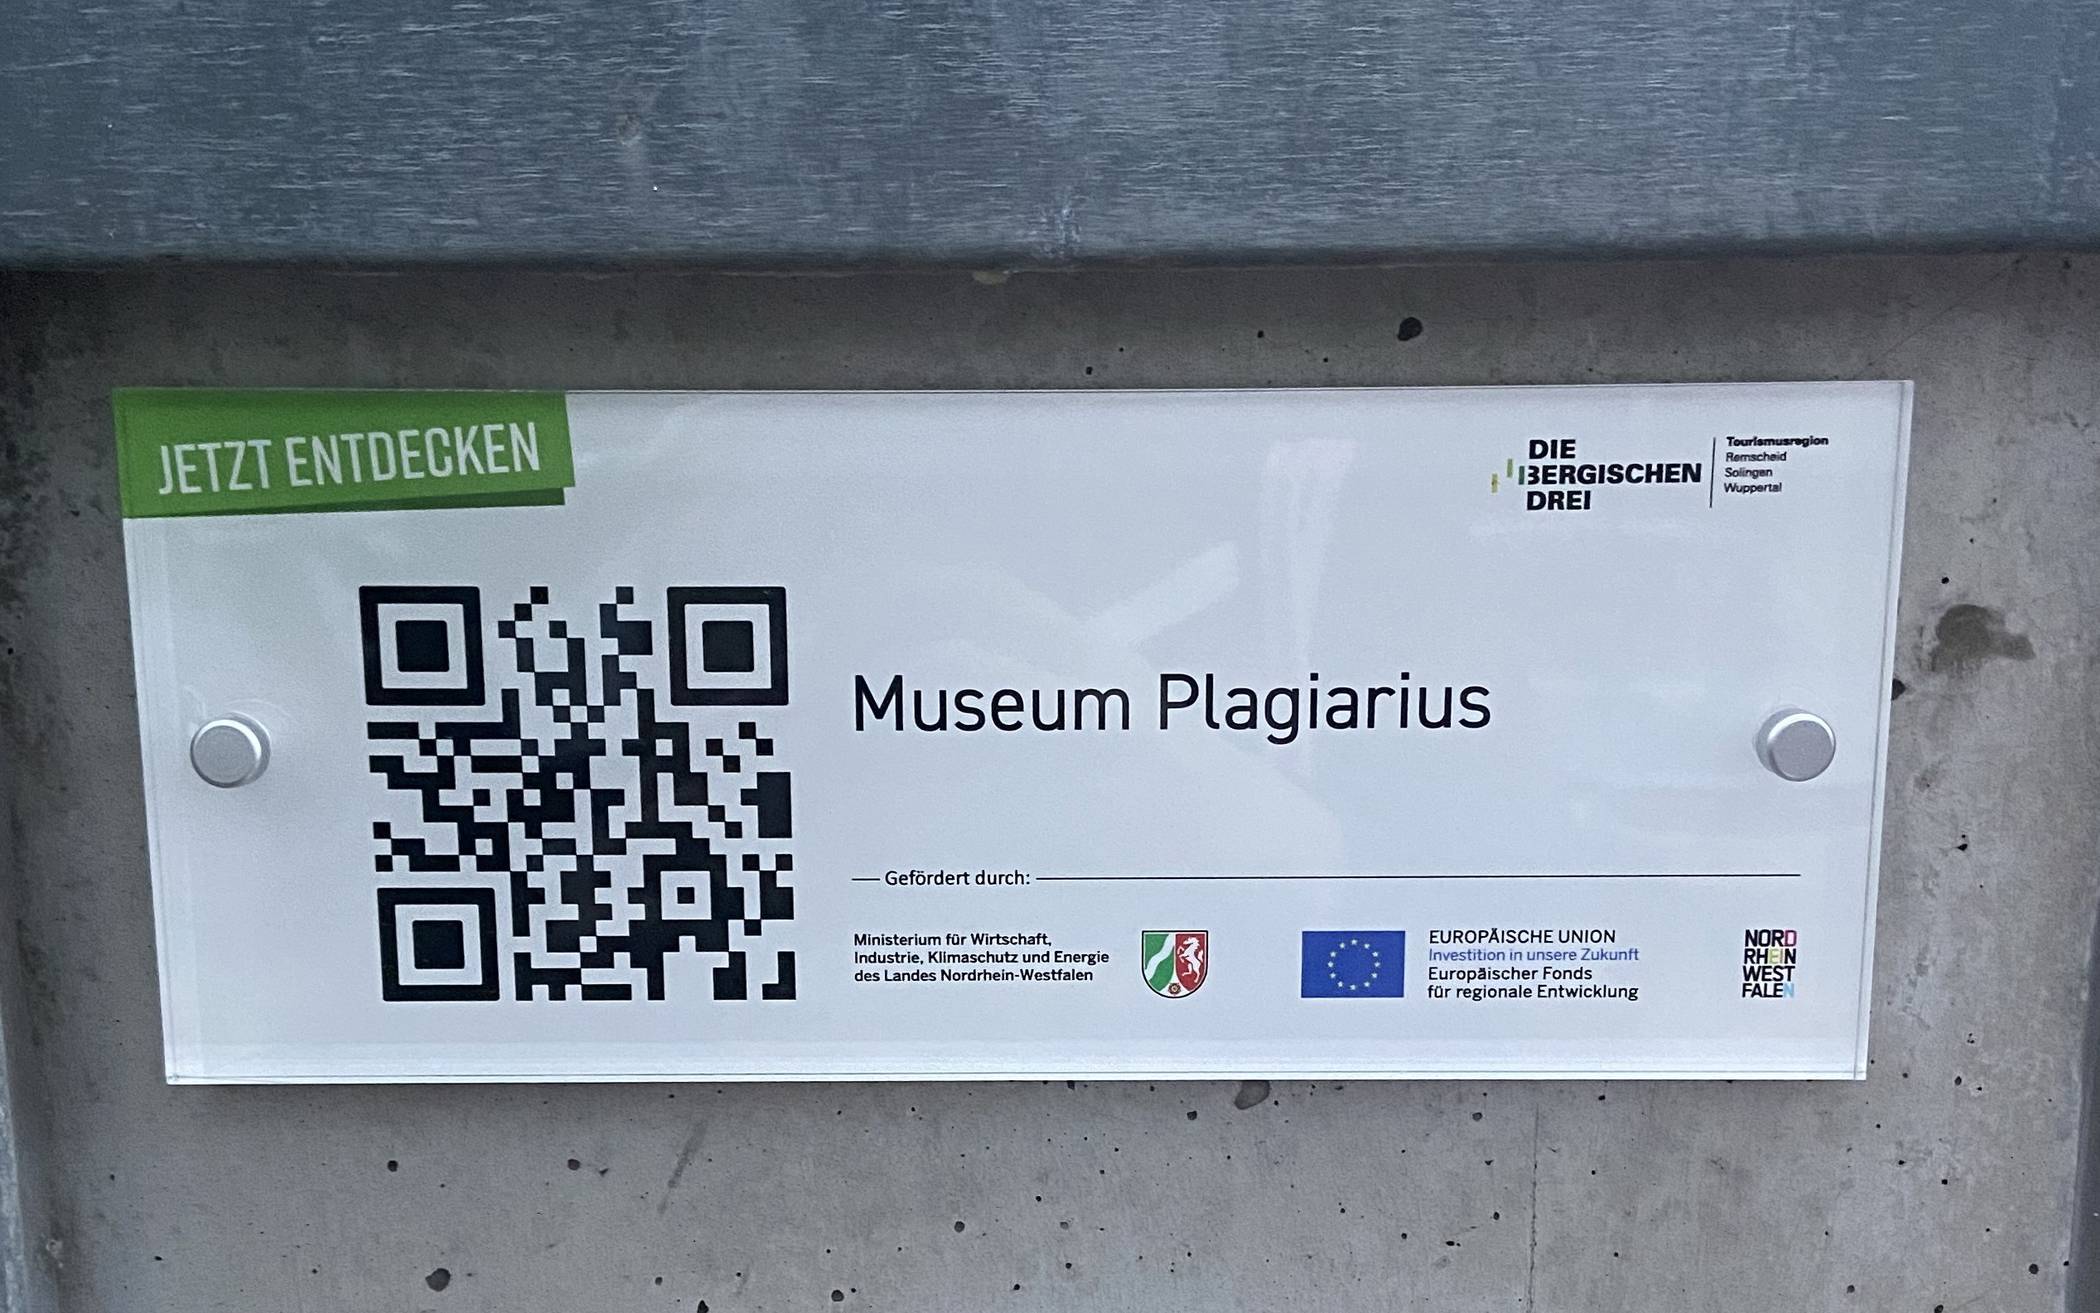 Der QR-Code für das Museum Plagiarius